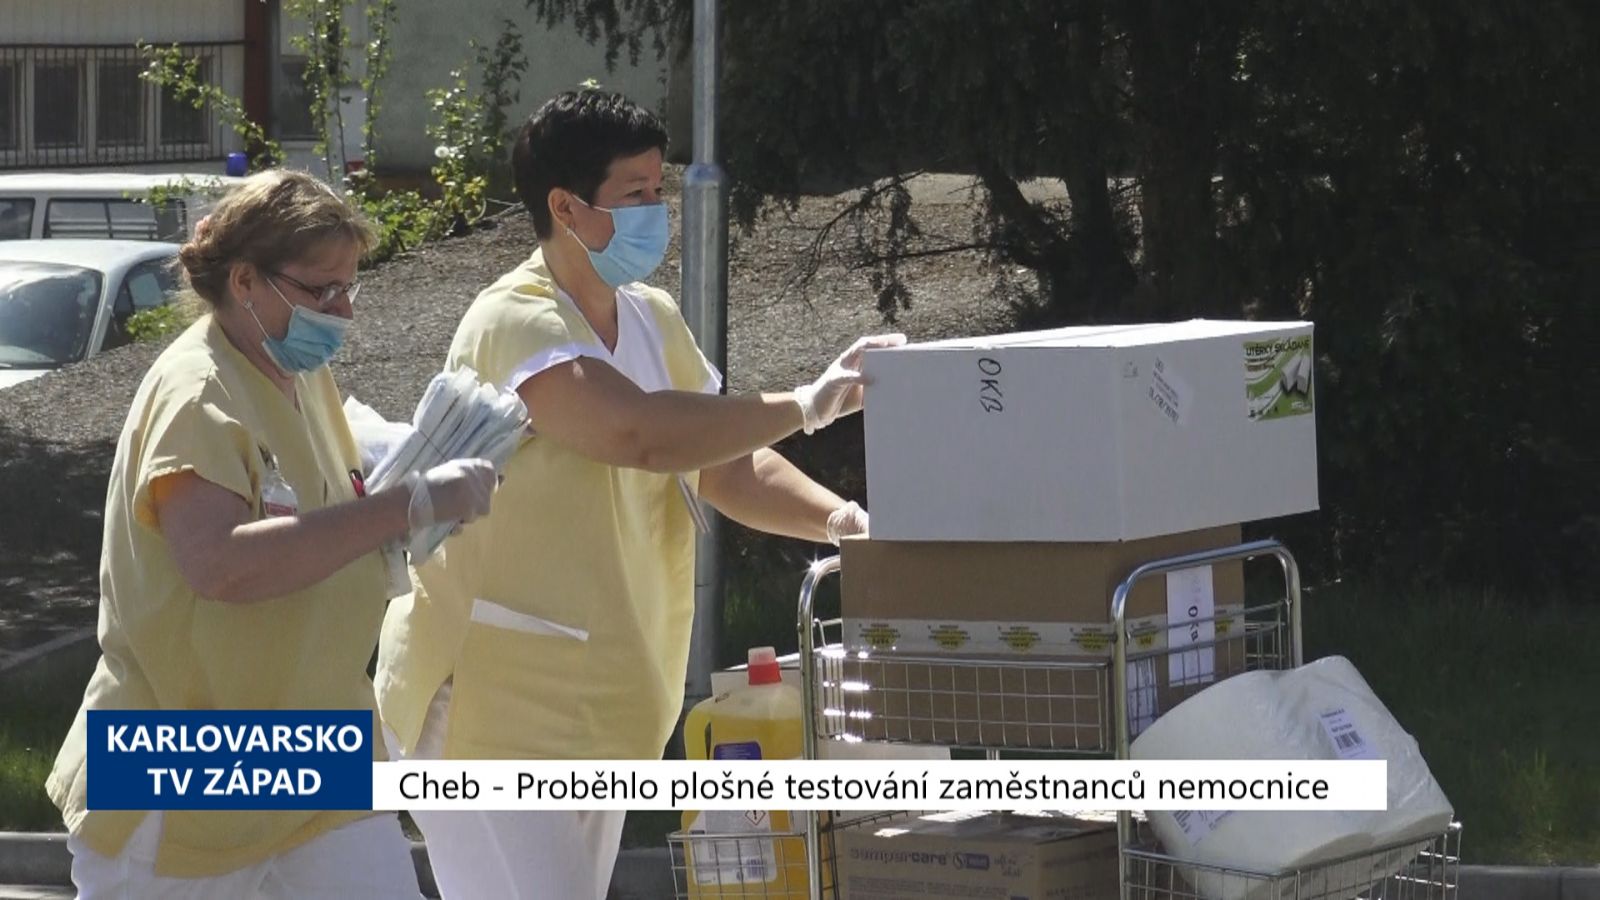 Cheb: Proběhlo plošné testování zaměstnanců nemocnice (TV Západ)